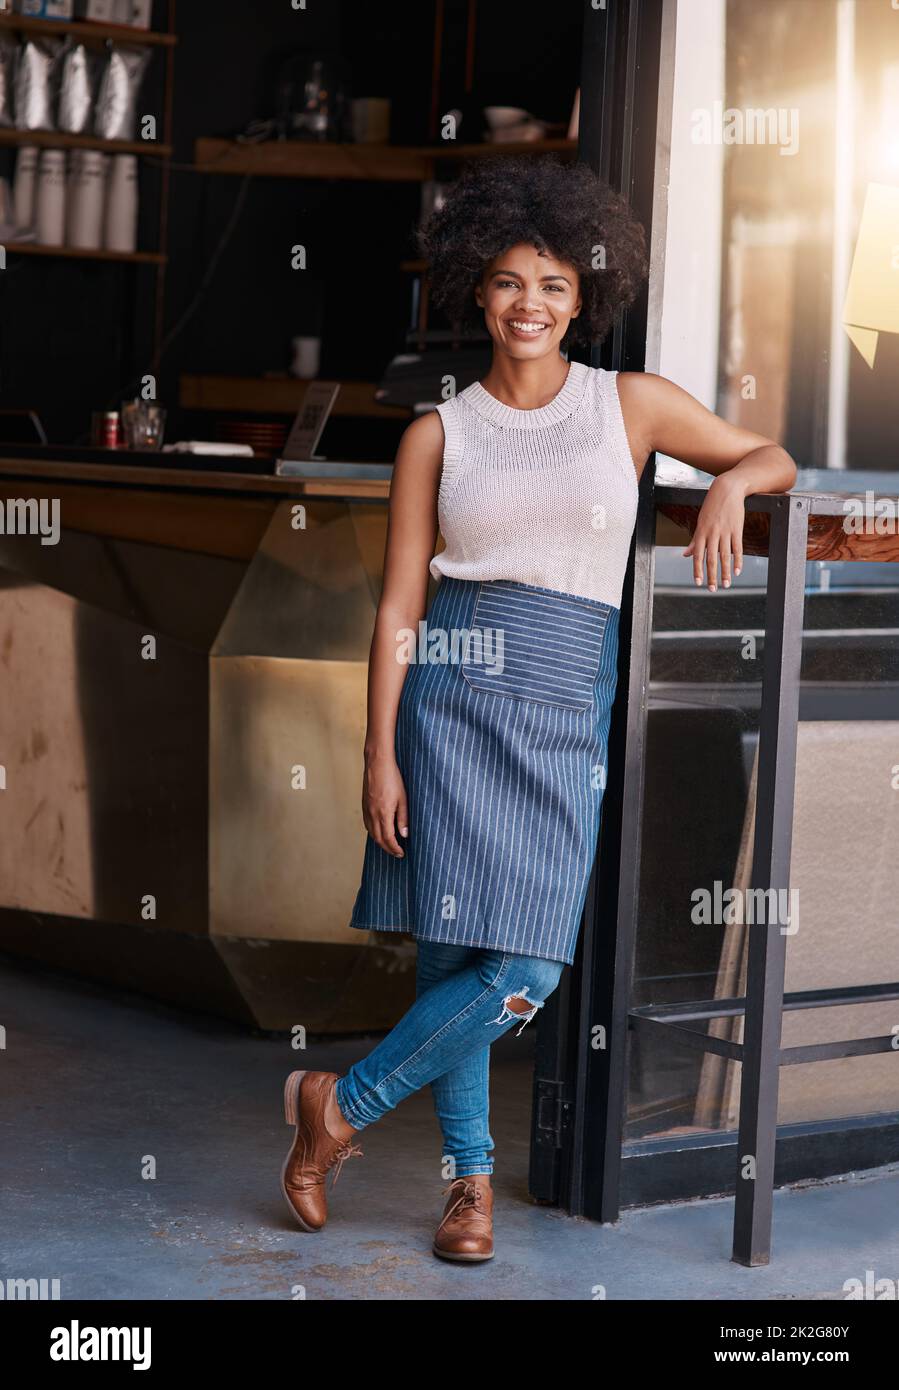 Halten Sie an Ihrem Unternehmergeist fest. Porträt einer selbstbewussten jungen Geschäftsbesitzerin, die vor der Tür ihres Cafés posiert. Stockfoto